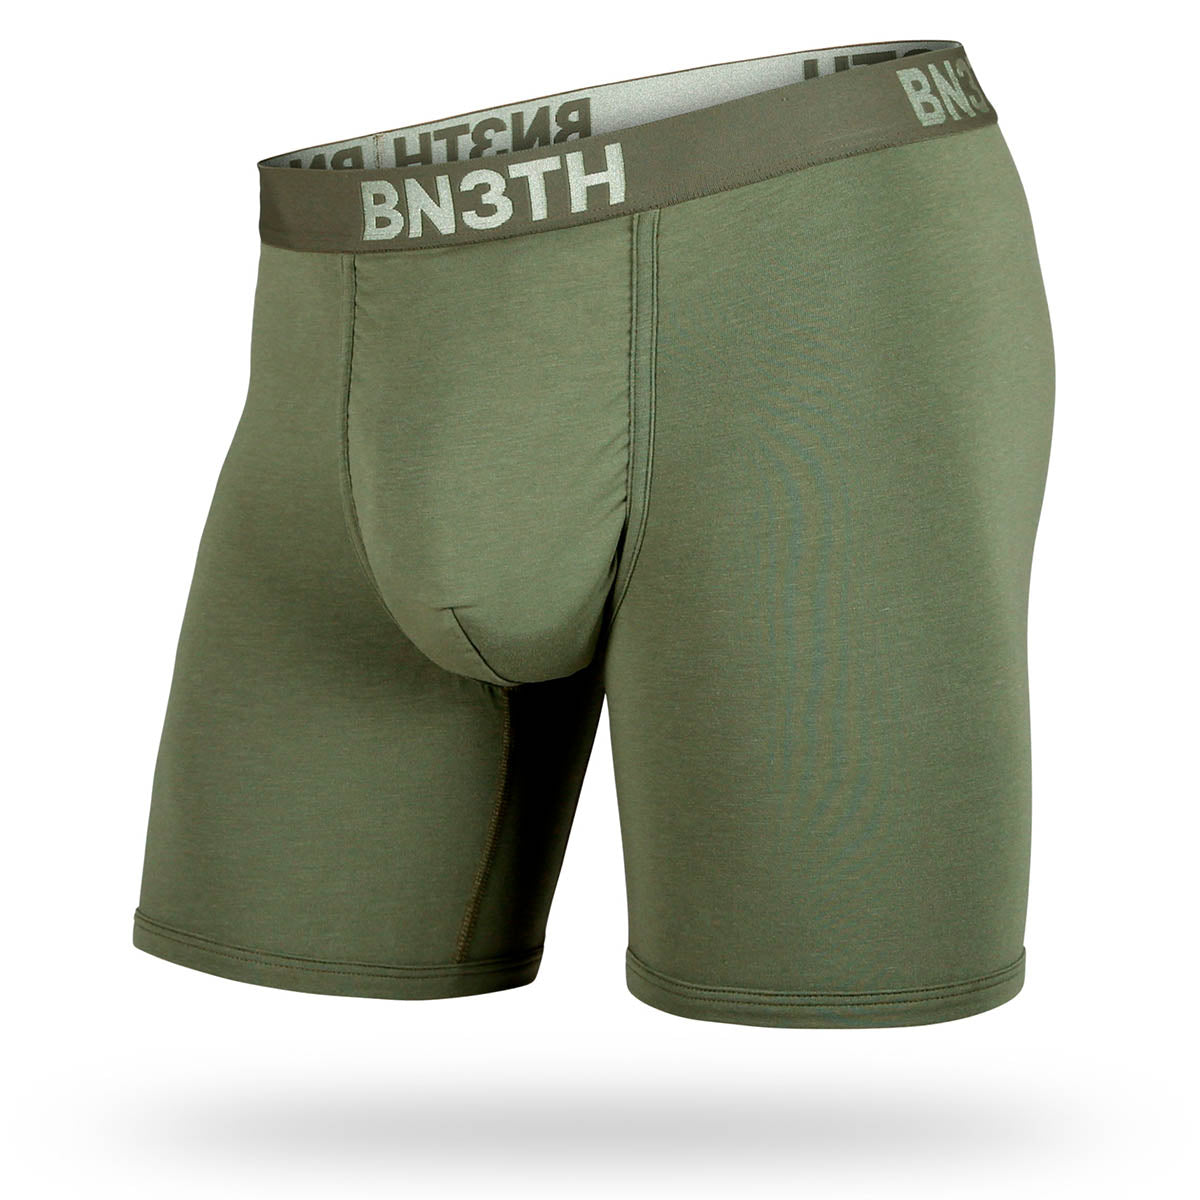 BN3TH : 2 boxers Bn3th & 2 paires de bas Hook